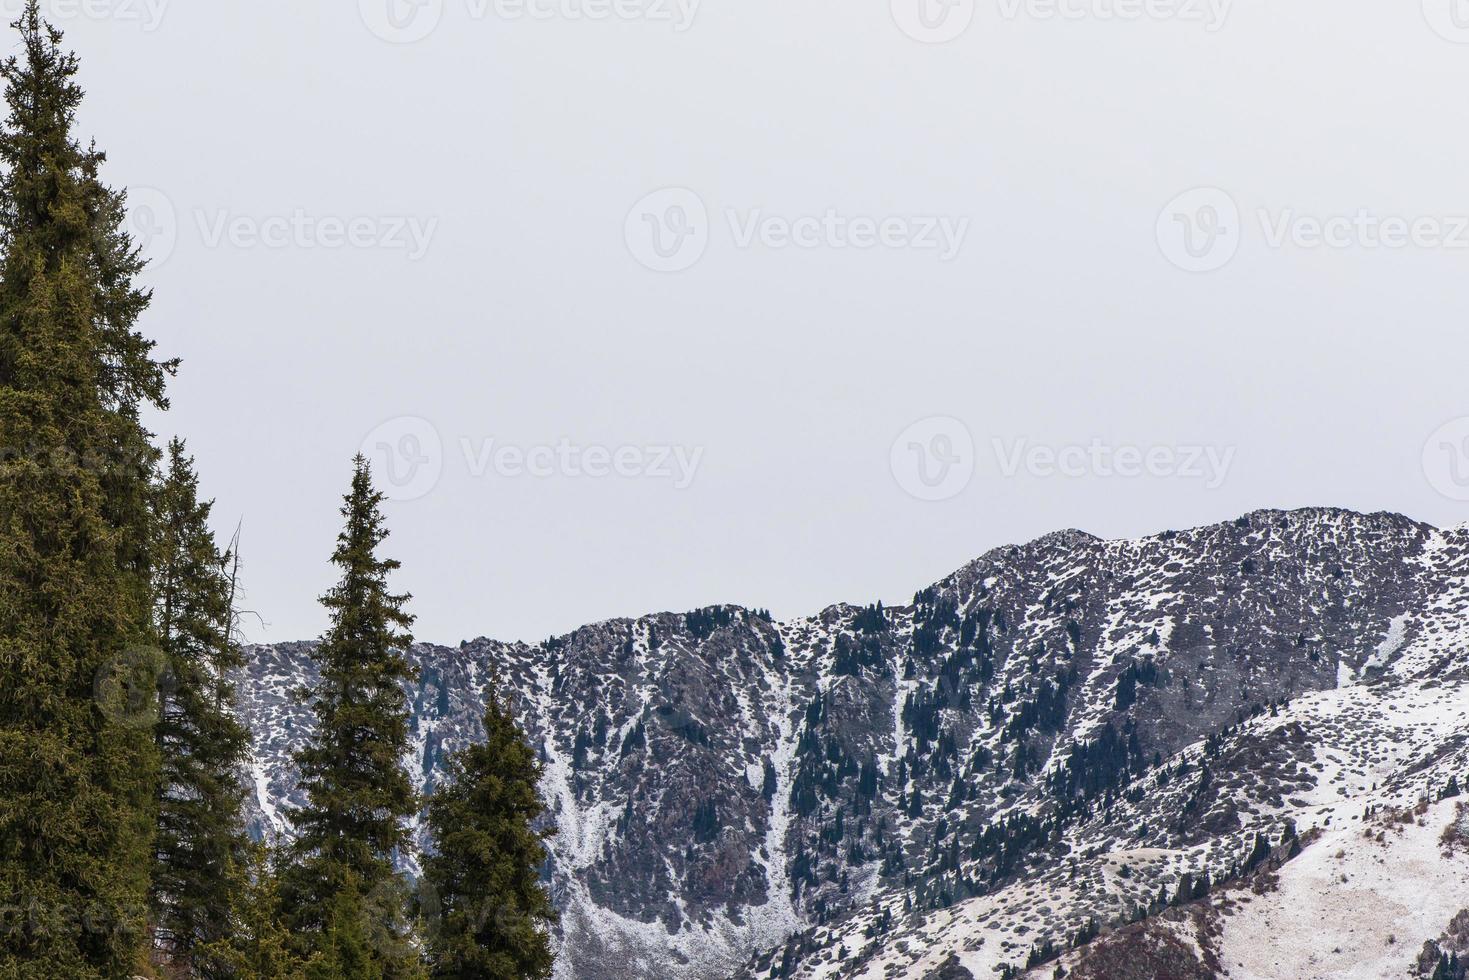 paisagem montanhosa de inverno com pinheiros foto